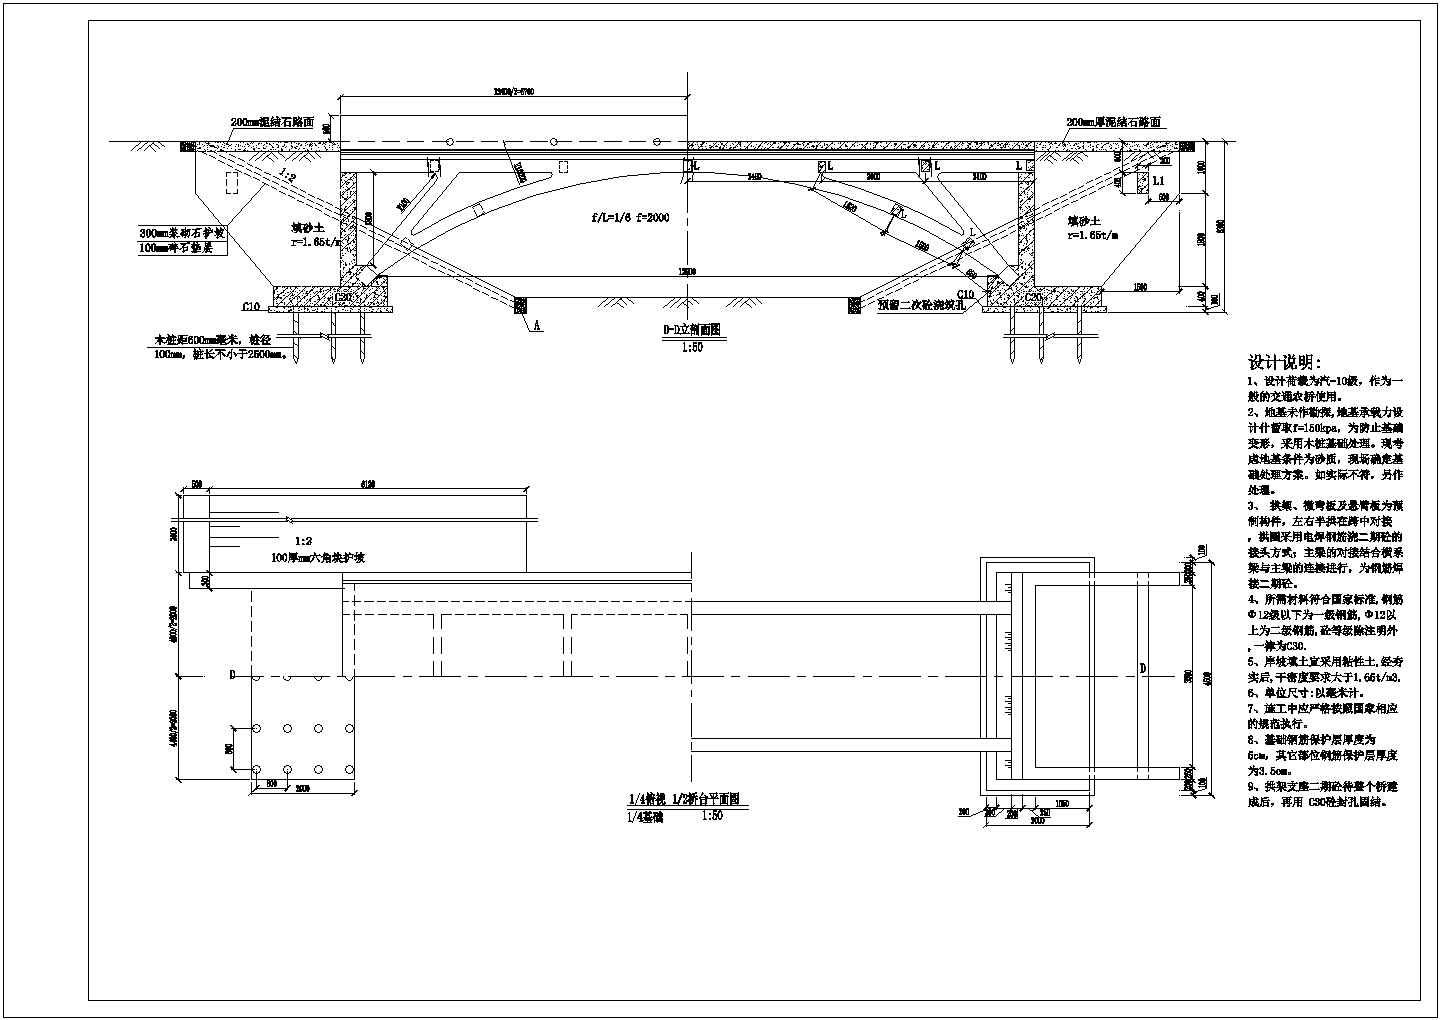 【江苏】12米钢架拱桥设计施工图